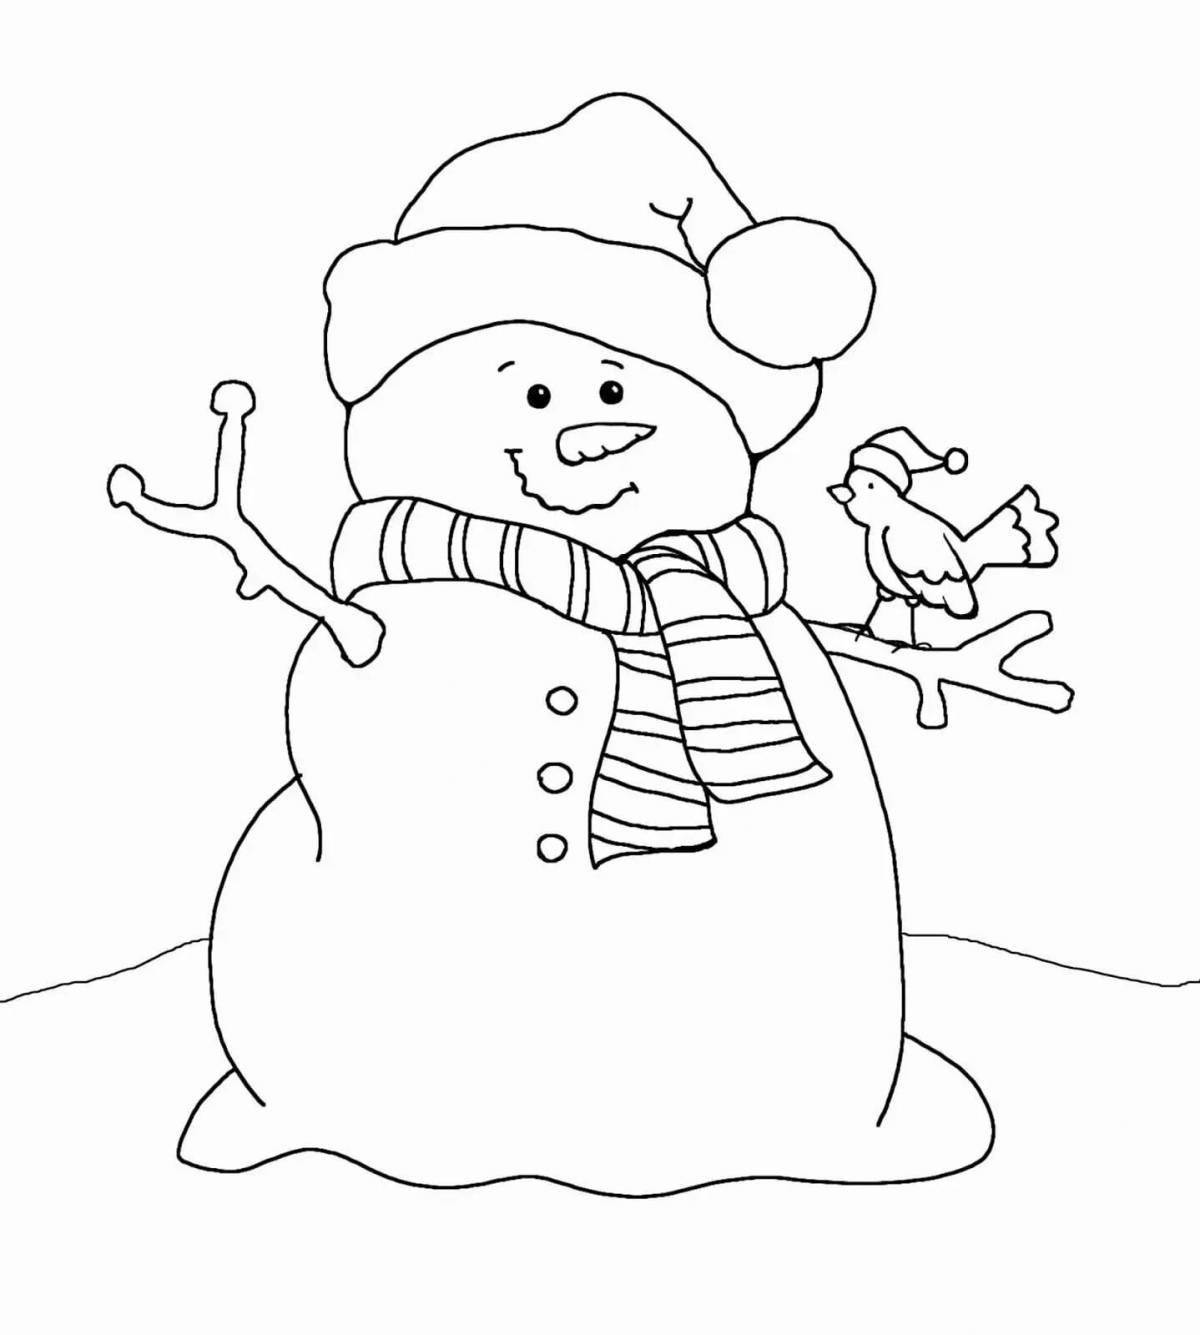 Комическая раскраска смешной снеговик